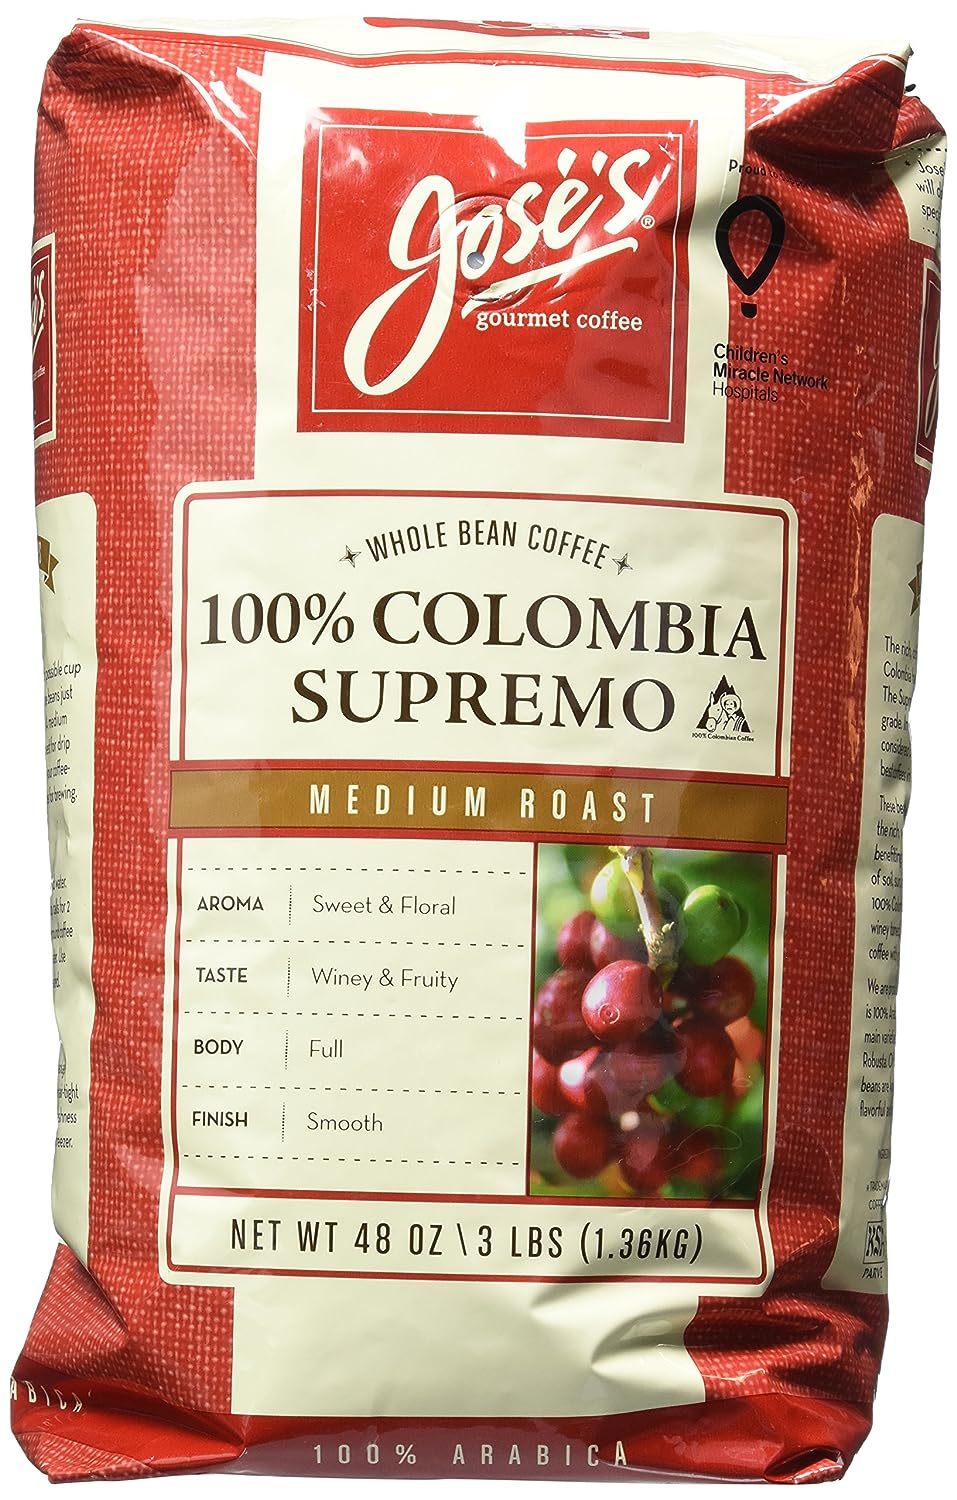 Jose's Whole Bean Coffee Columbia Supremo